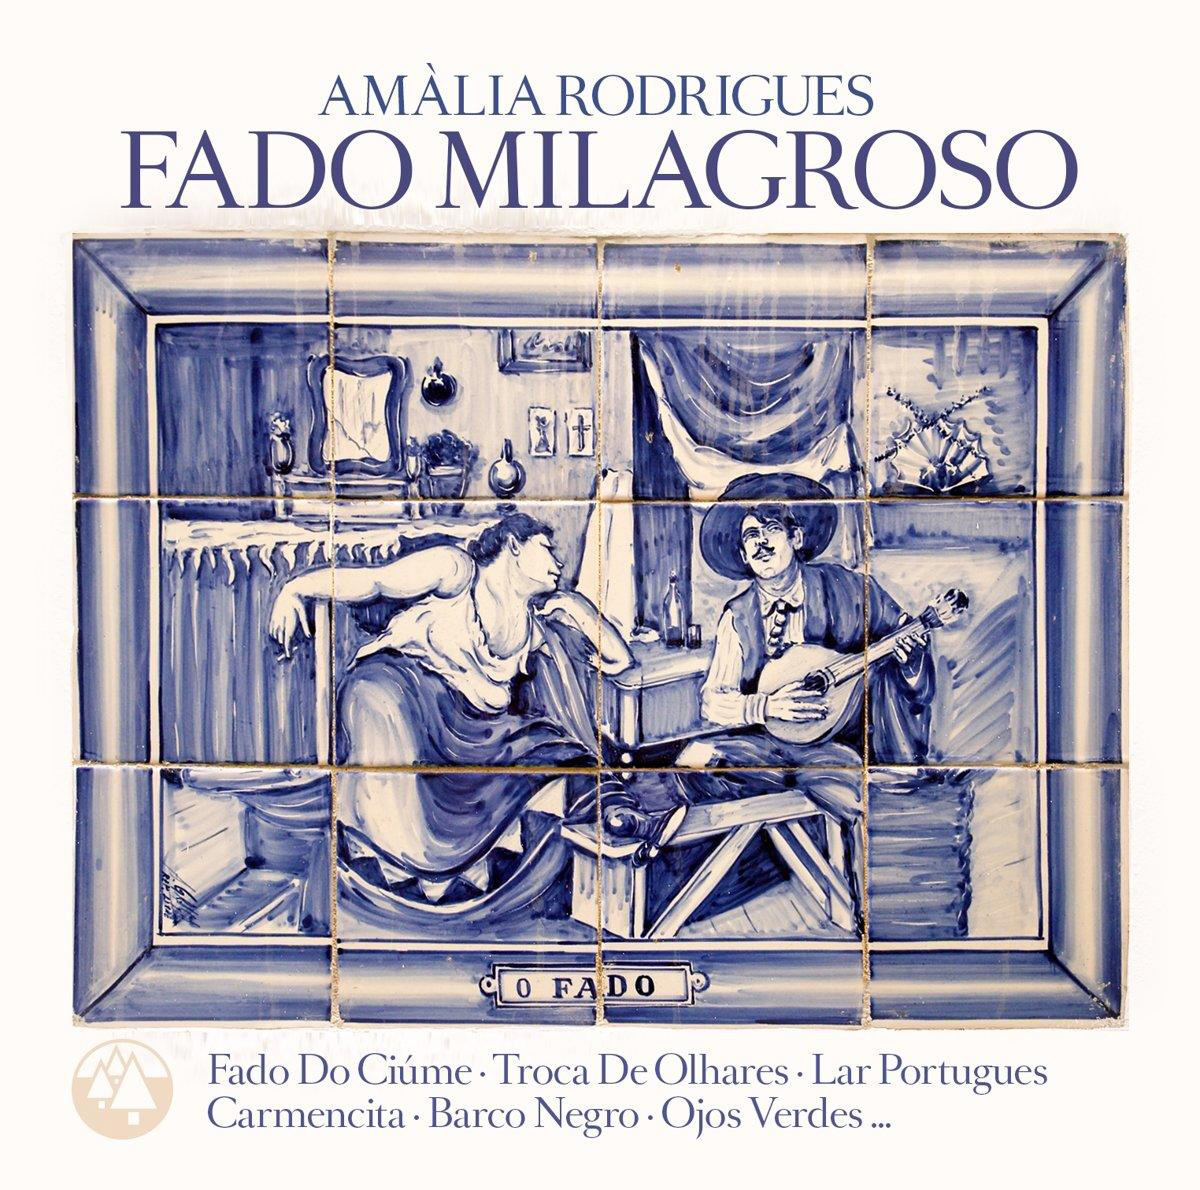 Amália Rodrigues - - Fado (Vinyl) Milagroso